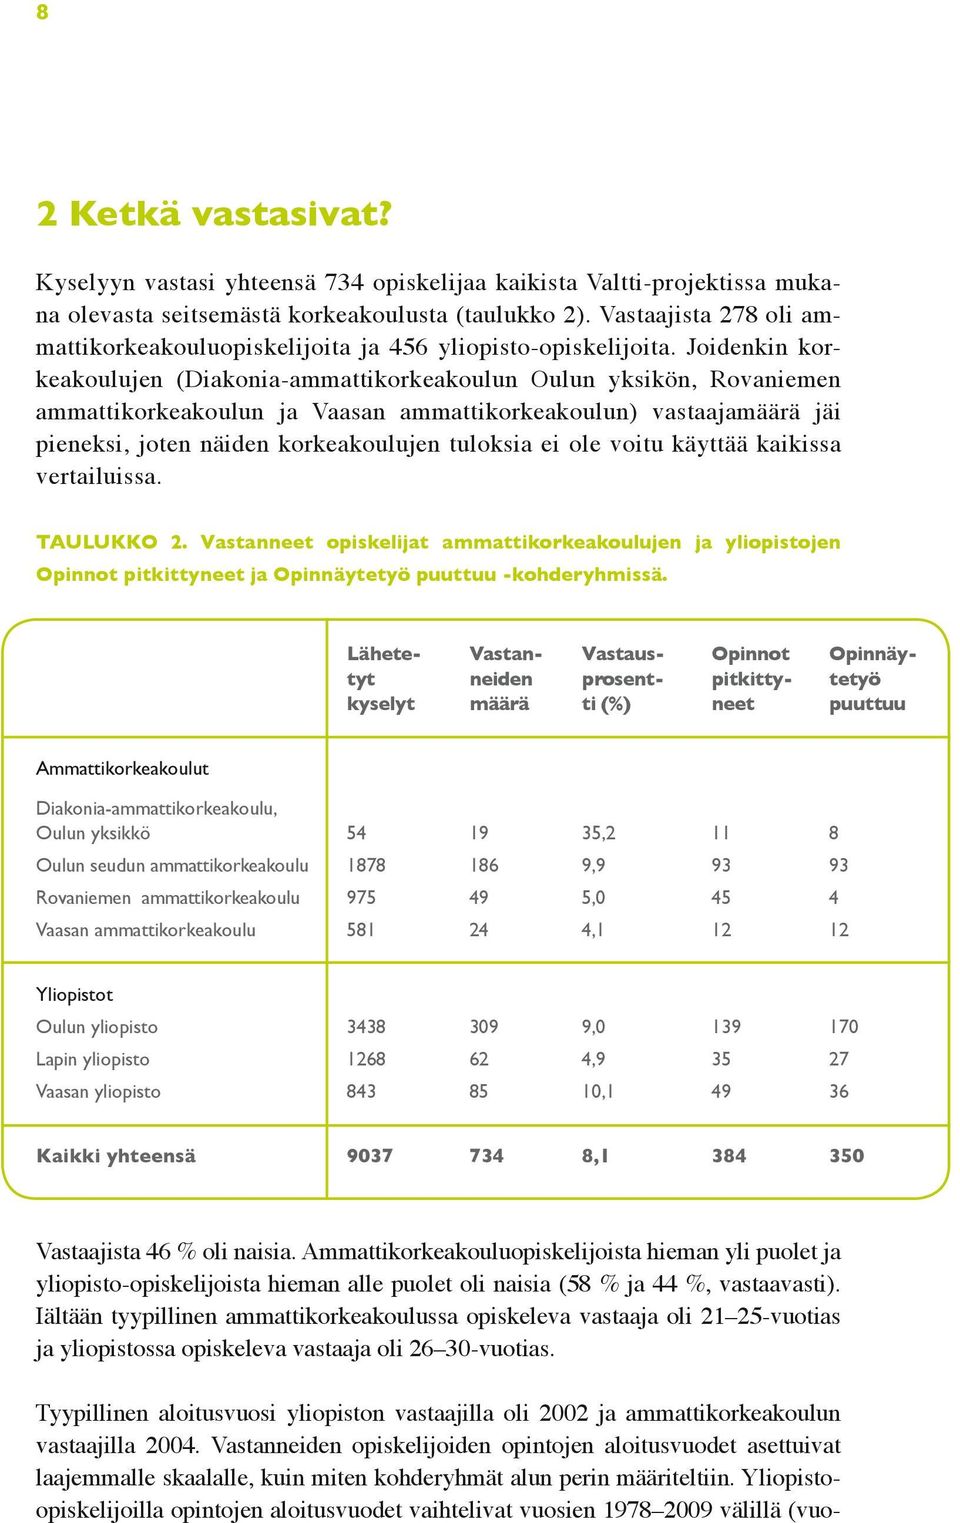 Joidenkin korkeakoulujen (Diakonia-ammattikorkeakoulun Oulun yksikön, Rovaniemen ammattikorkeakoulun ja Vaasan ammattikorkeakoulun) vastaajamäärä jäi pieneksi, joten näiden korkeakoulujen tuloksia ei